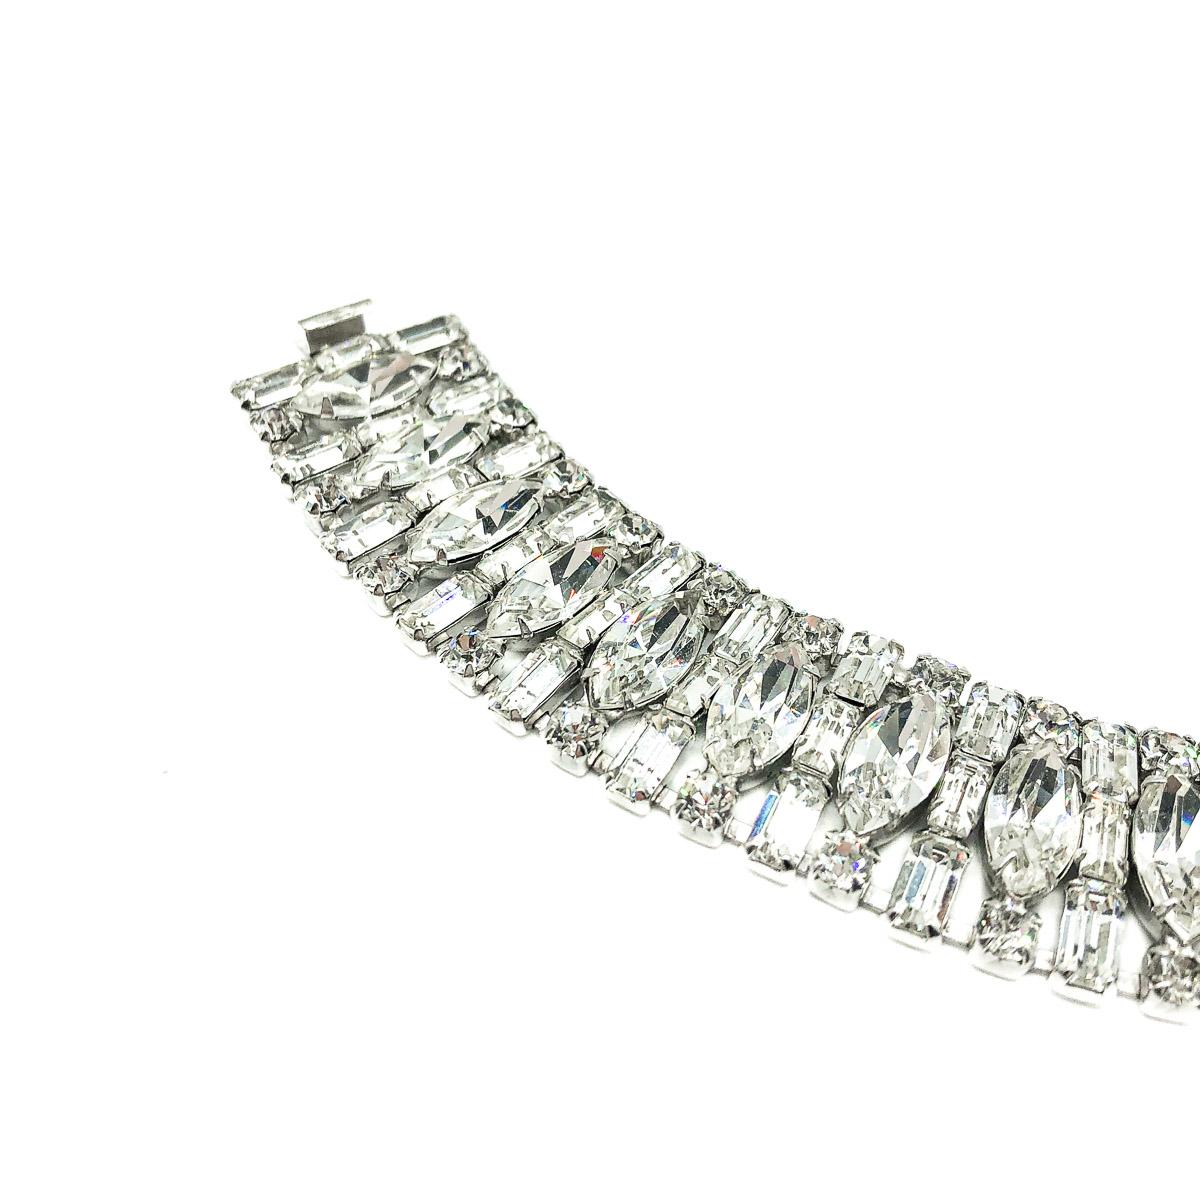 Ein göttliches Vintage Weiss Cocktail-Armband. Mit Kristallen im Phantasieschliff in Baguette-, Marquise- und Chatonform. Krallenfassung aus rhodiniertem Metall. Weiss produzierte einige der hochwertigsten amerikanischen Modeschmuckstücke aus der